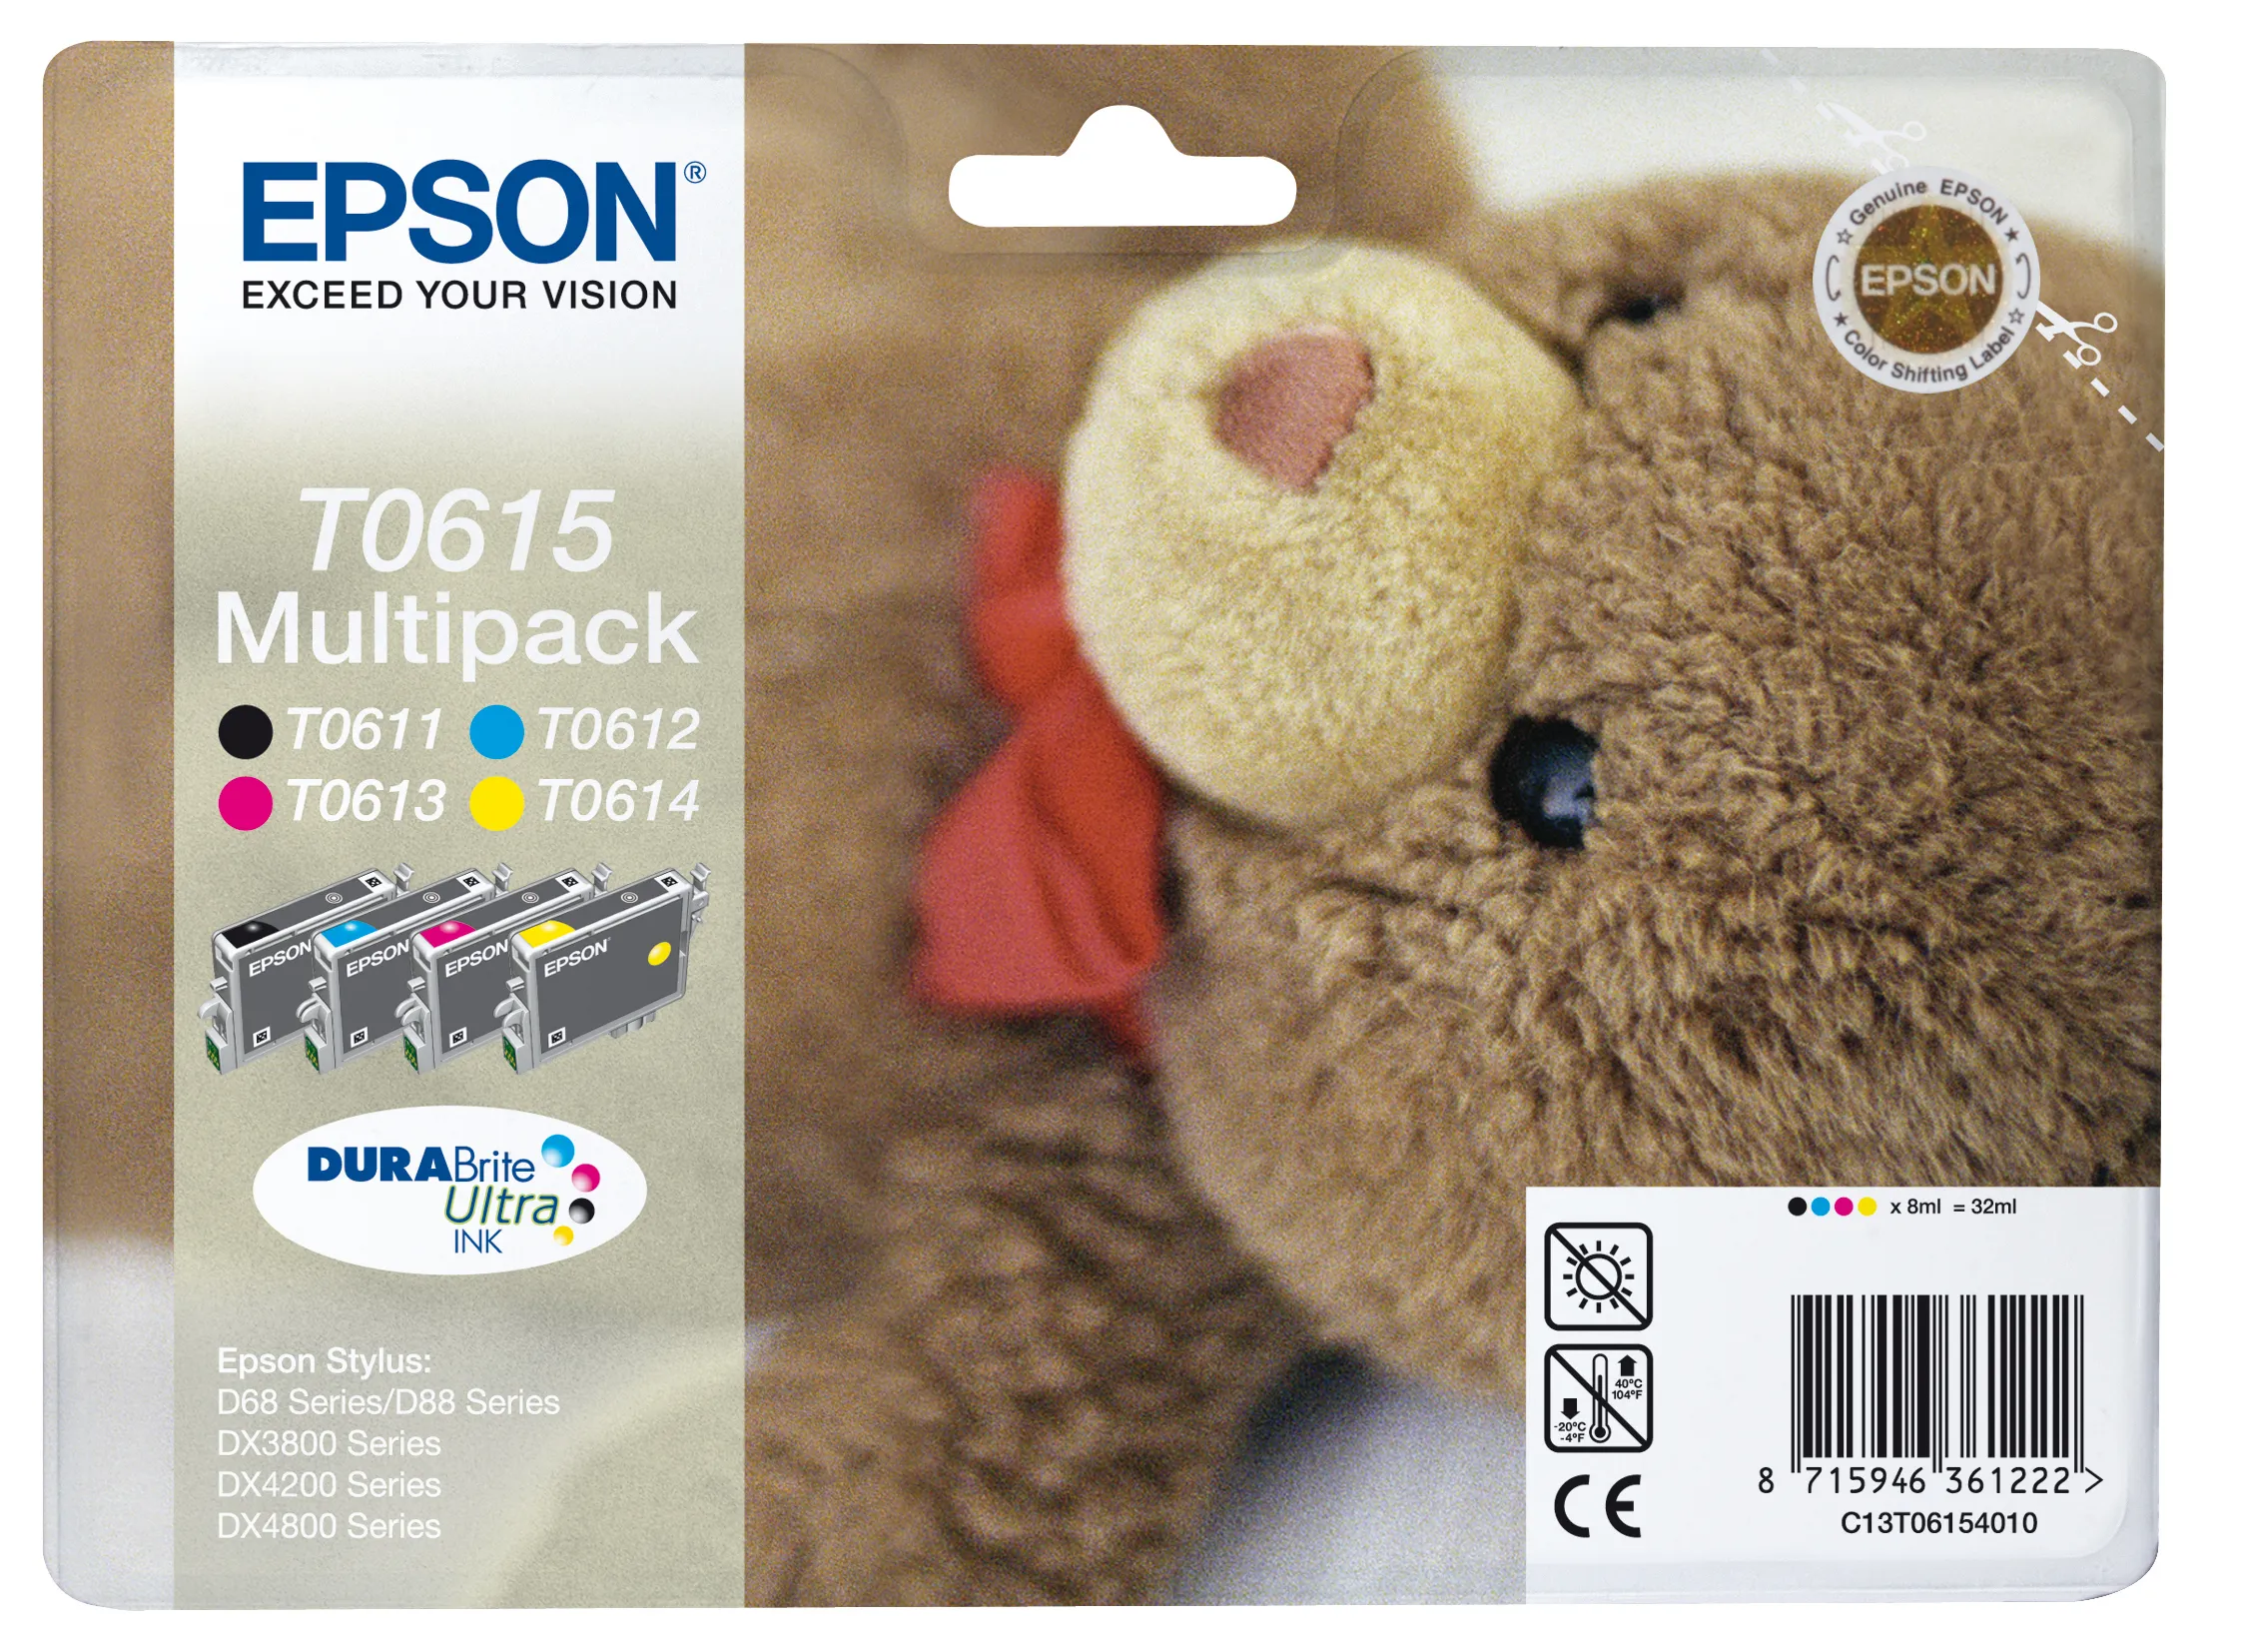 Vente Epson Teddybear Multipack "Ourson" (T0615) - Encres Epson au meilleur prix - visuel 4